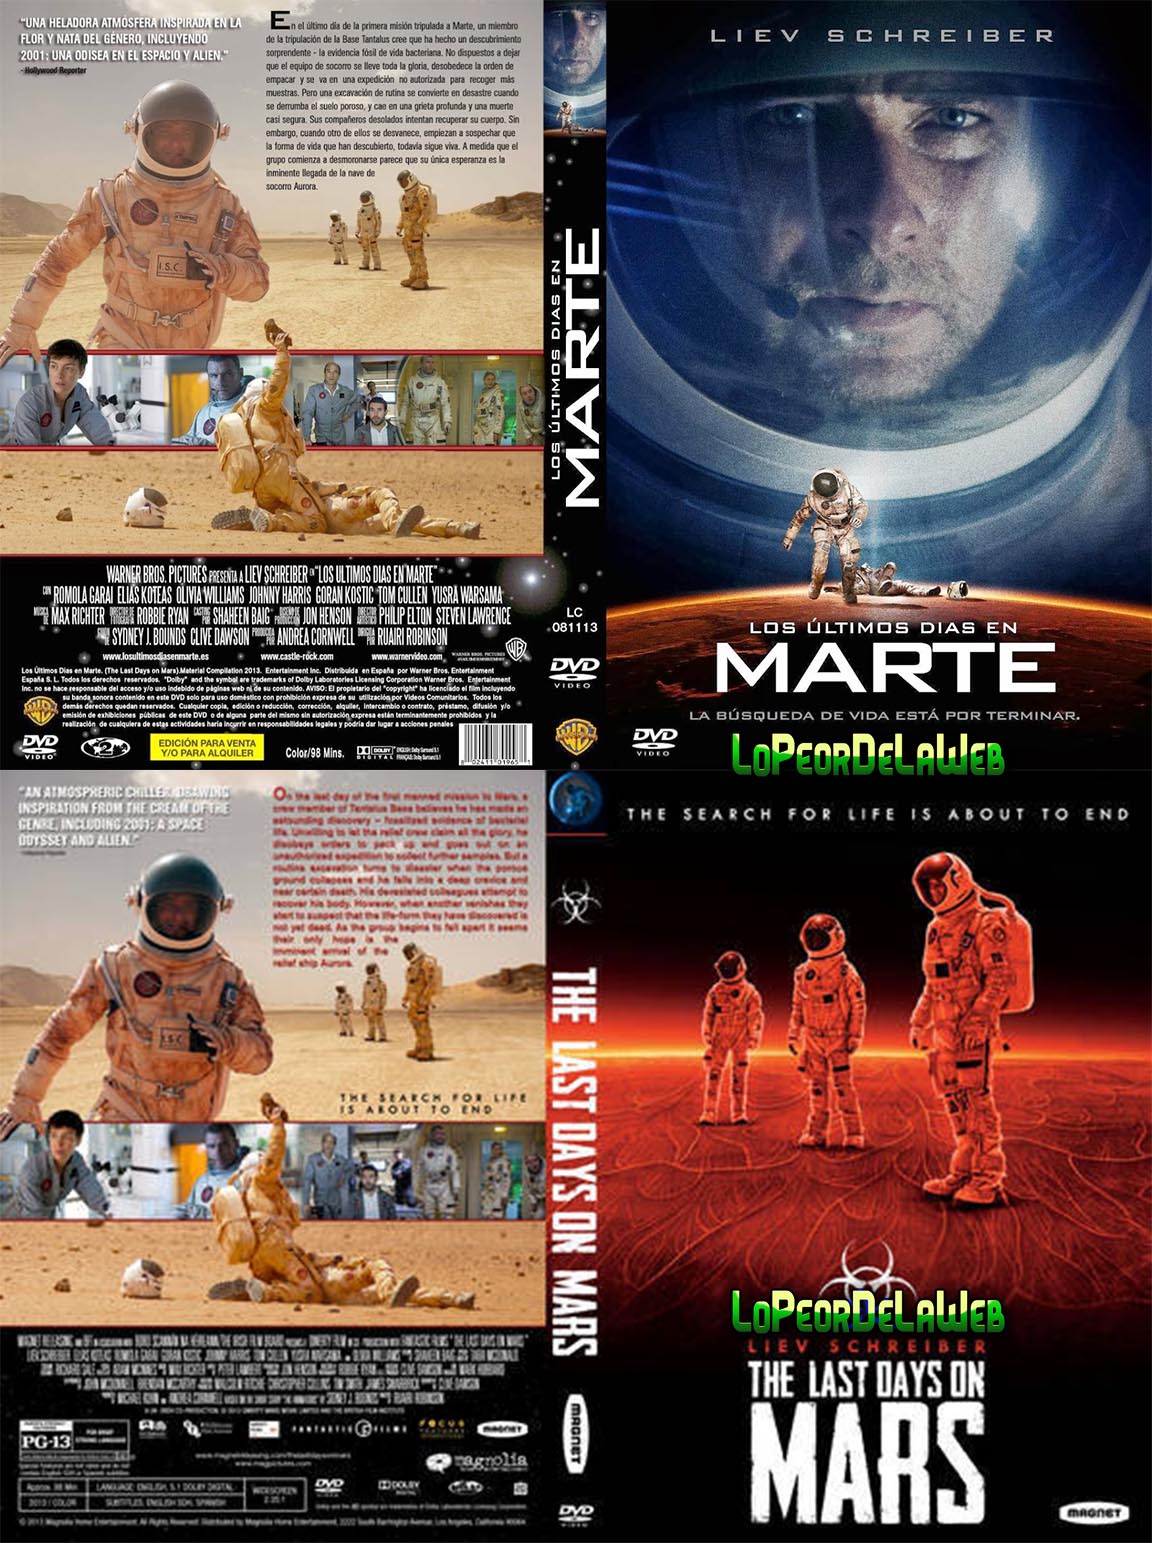 The Last Days on Mars (2013 - Liev Schreiber - Terror)